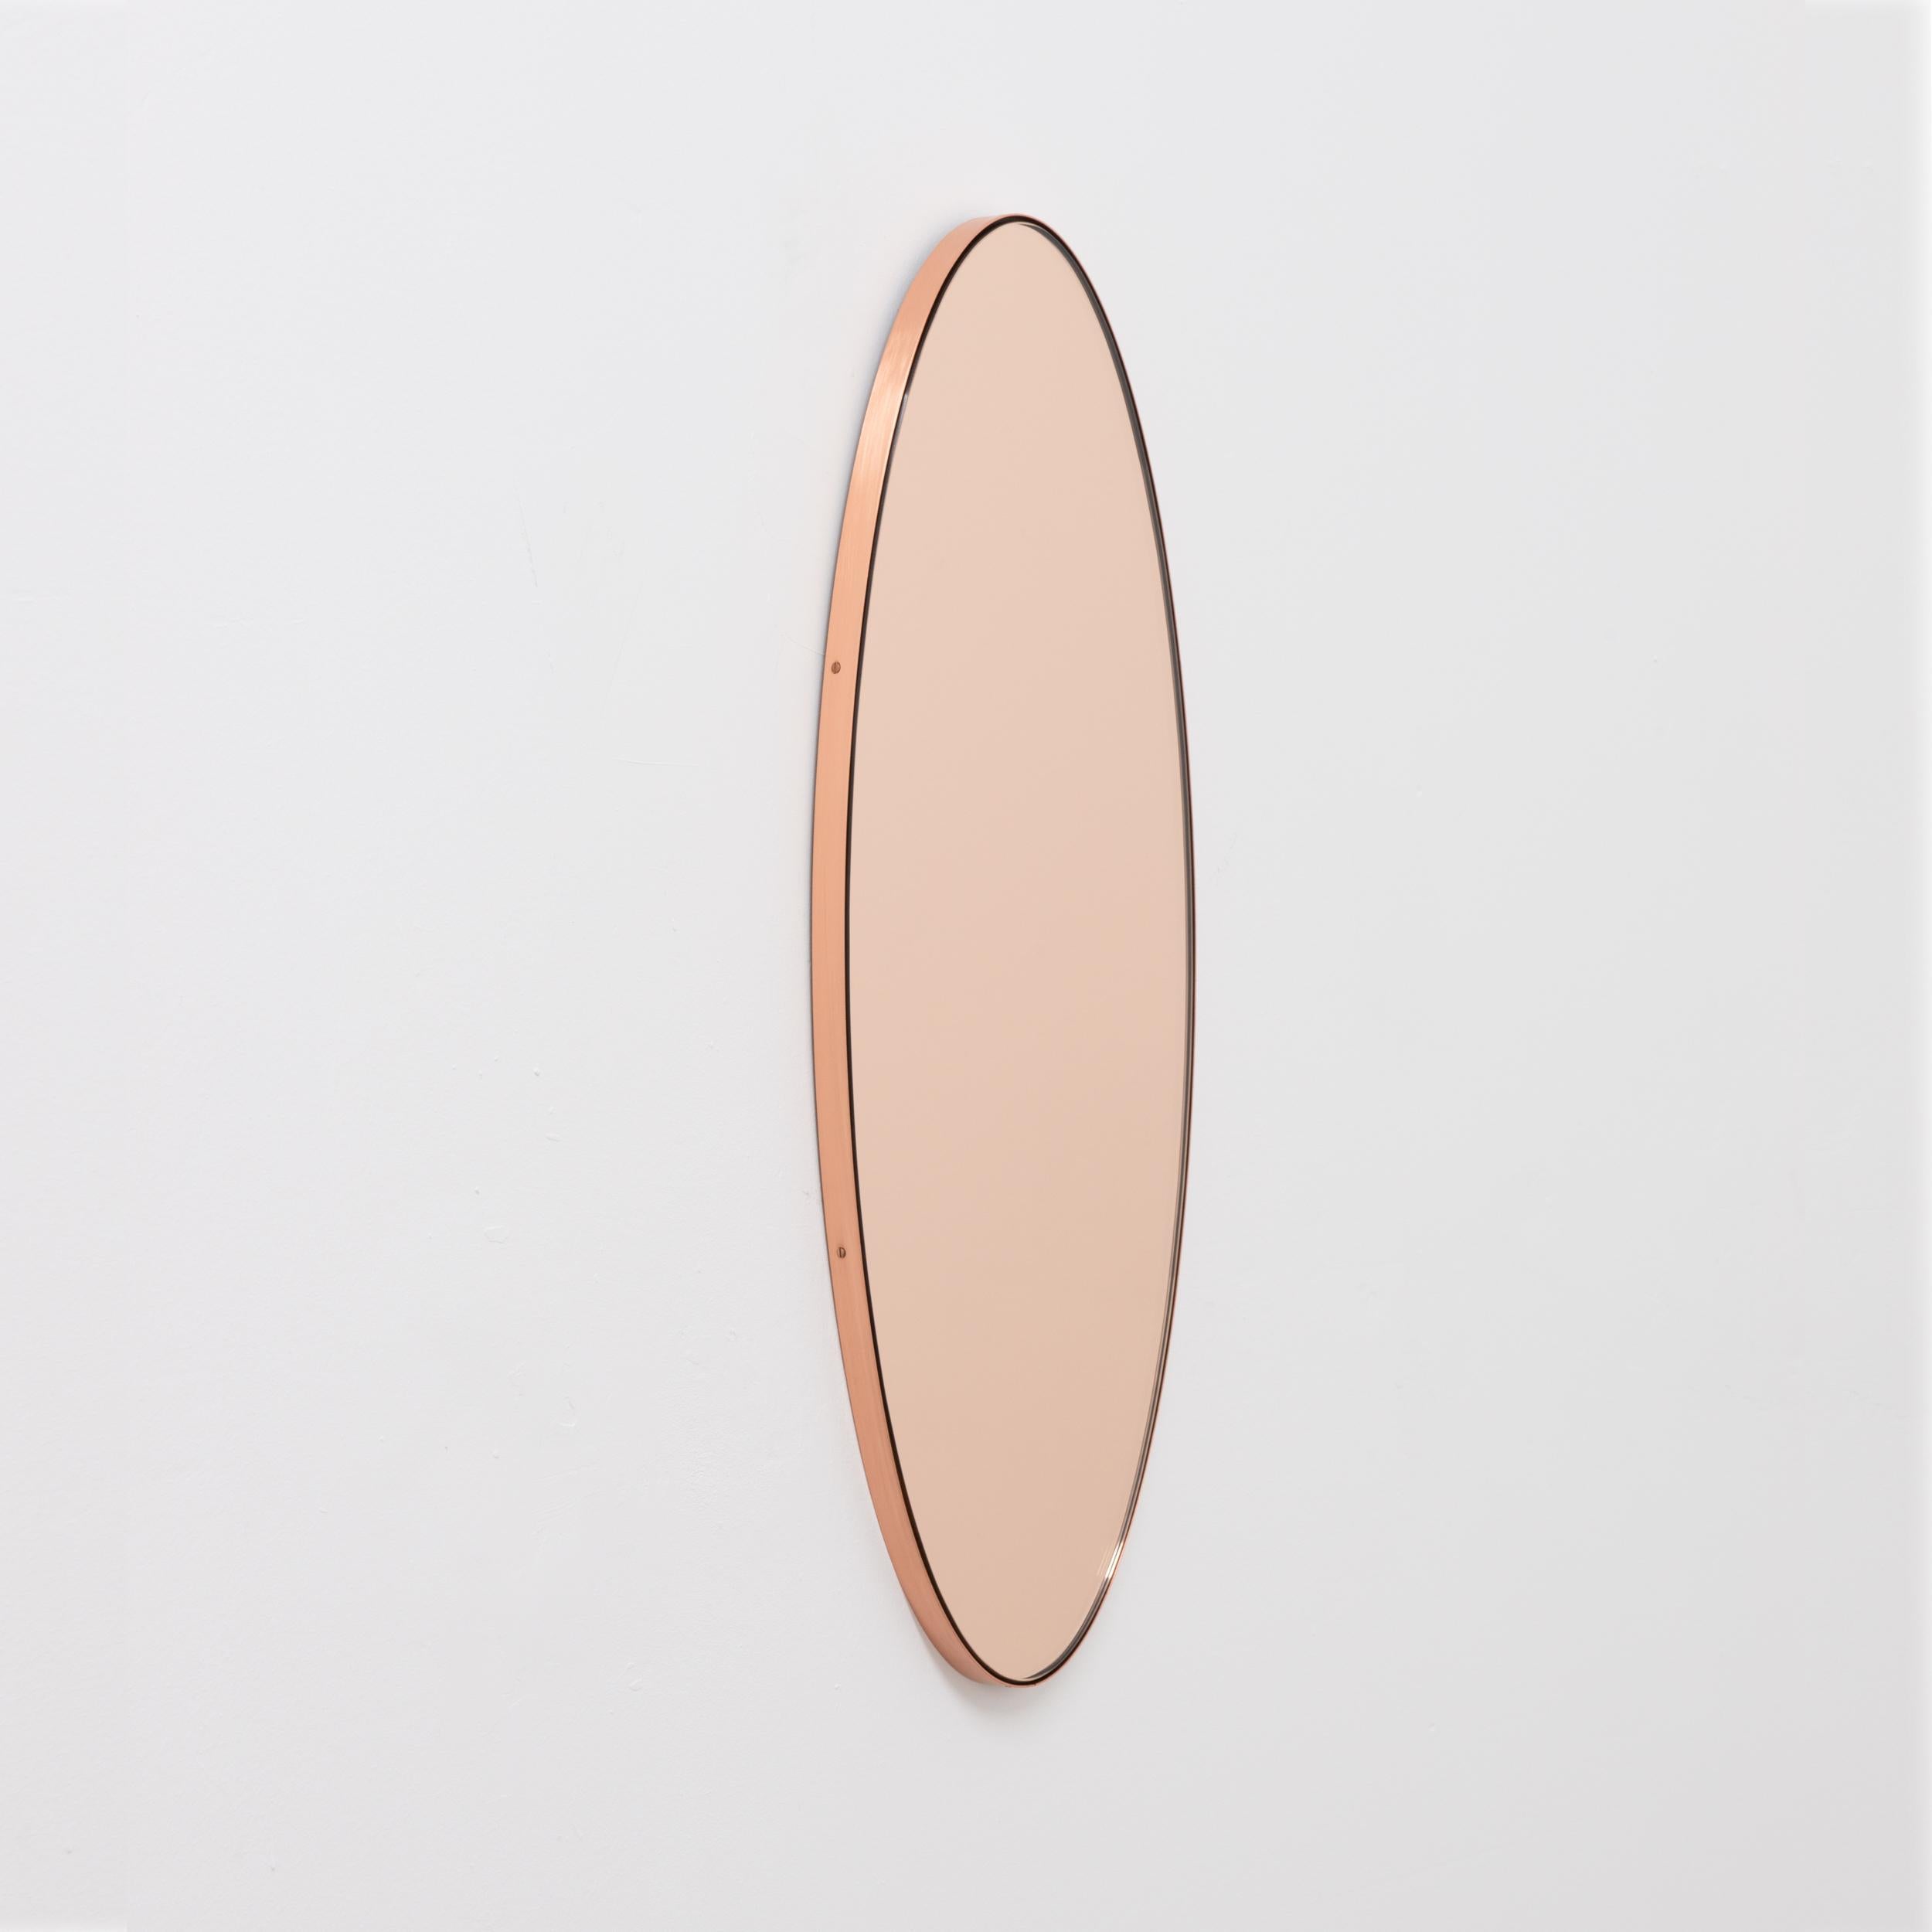 Miroir contemporain de forme ovale en or rose/pêche avec un élégant cadre en cuivre. Conçu et fabriqué à la main à Londres, au Royaume-Uni.

Les miroirs de taille moyenne, grande et extra-large (37cm x 56cm, 46cm x 71cm et 48cm x 97cm) sont équipés